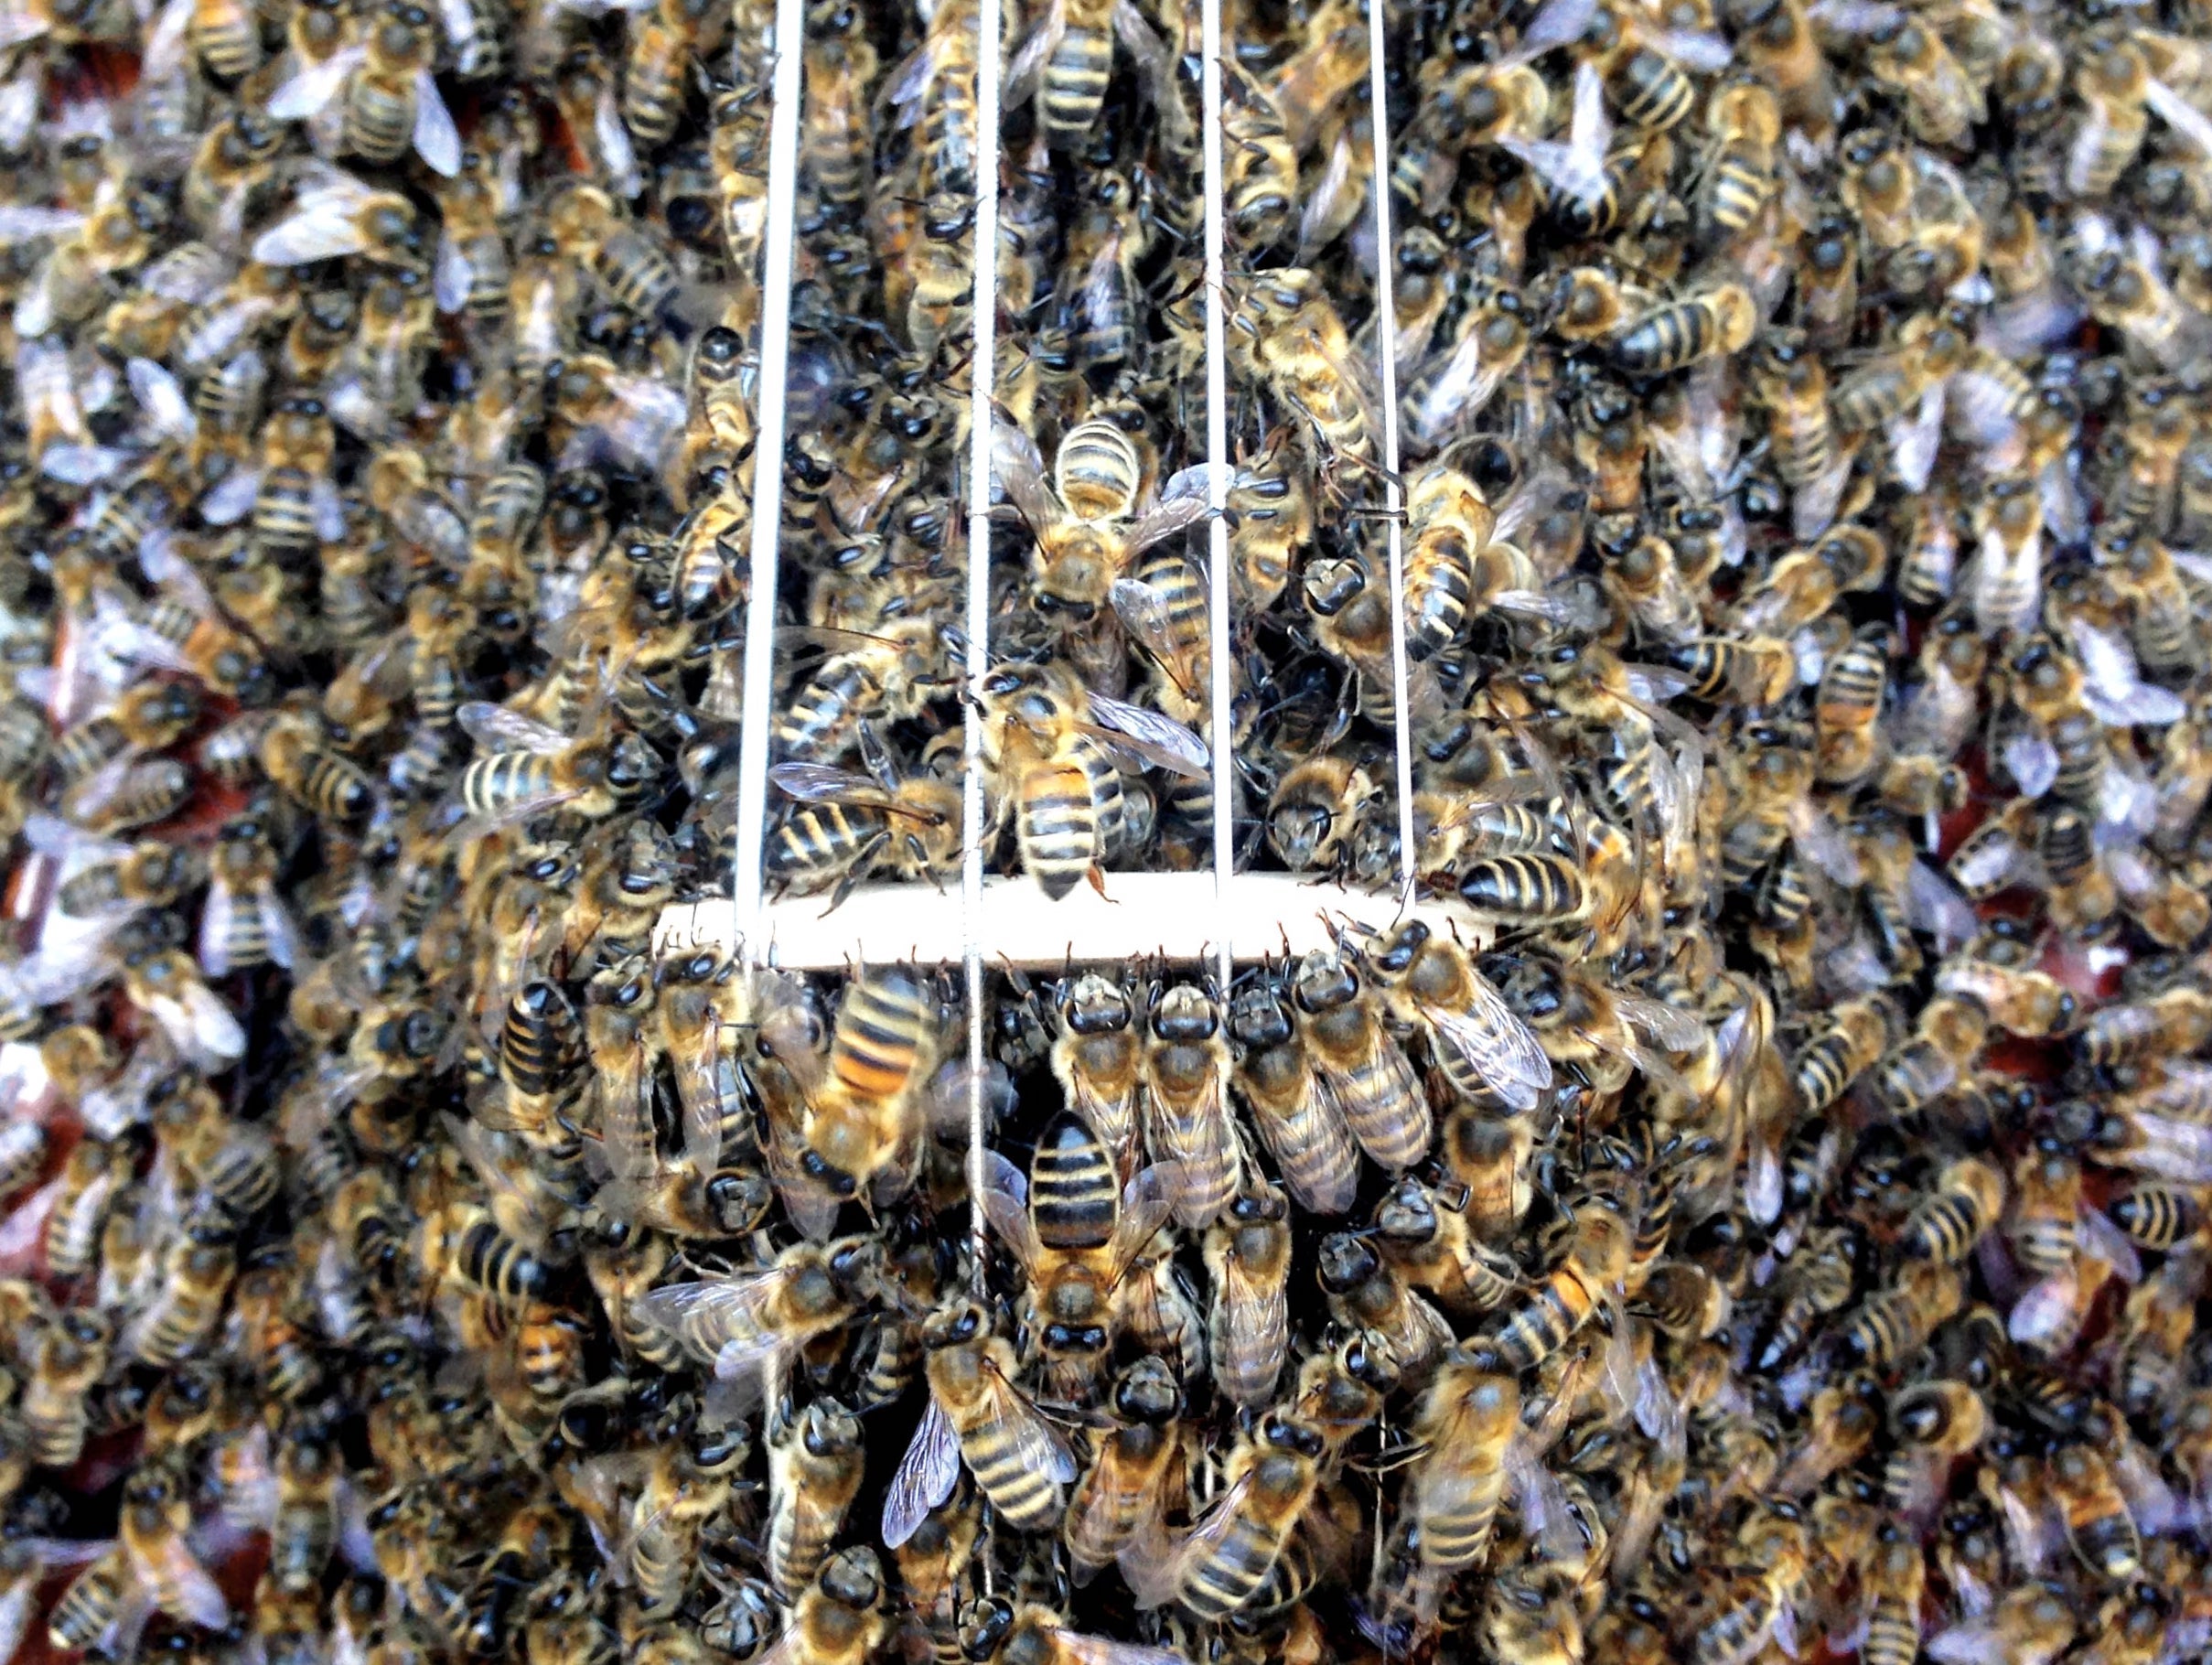 10 big secrets of bees - Greenpeace International